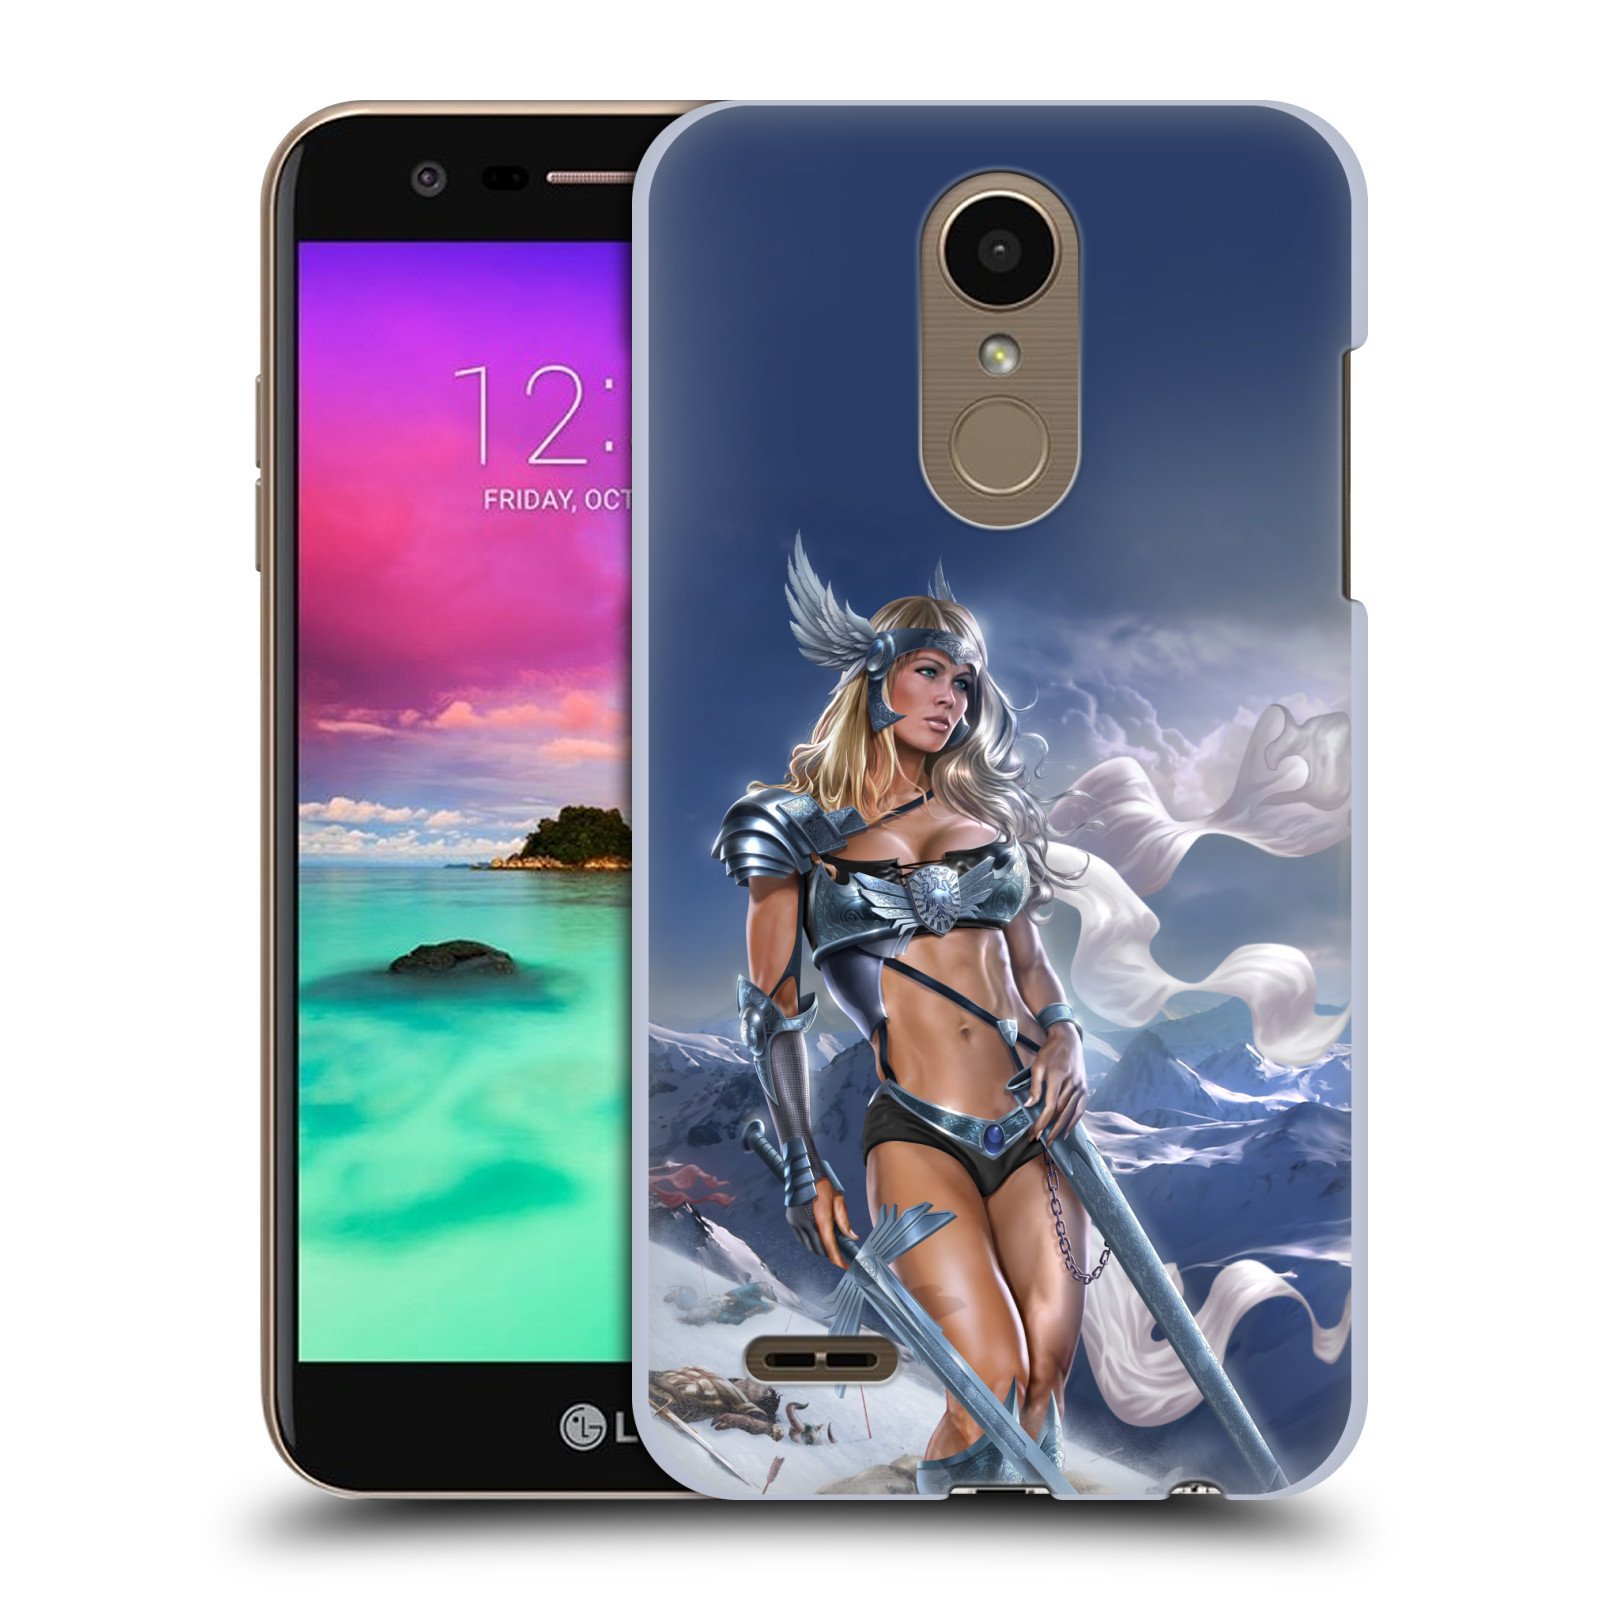 Pouzdro na mobil LG K10 2018 - HEAD CASE - Fantasy kresby Tom Wood - Princezna bojovnice